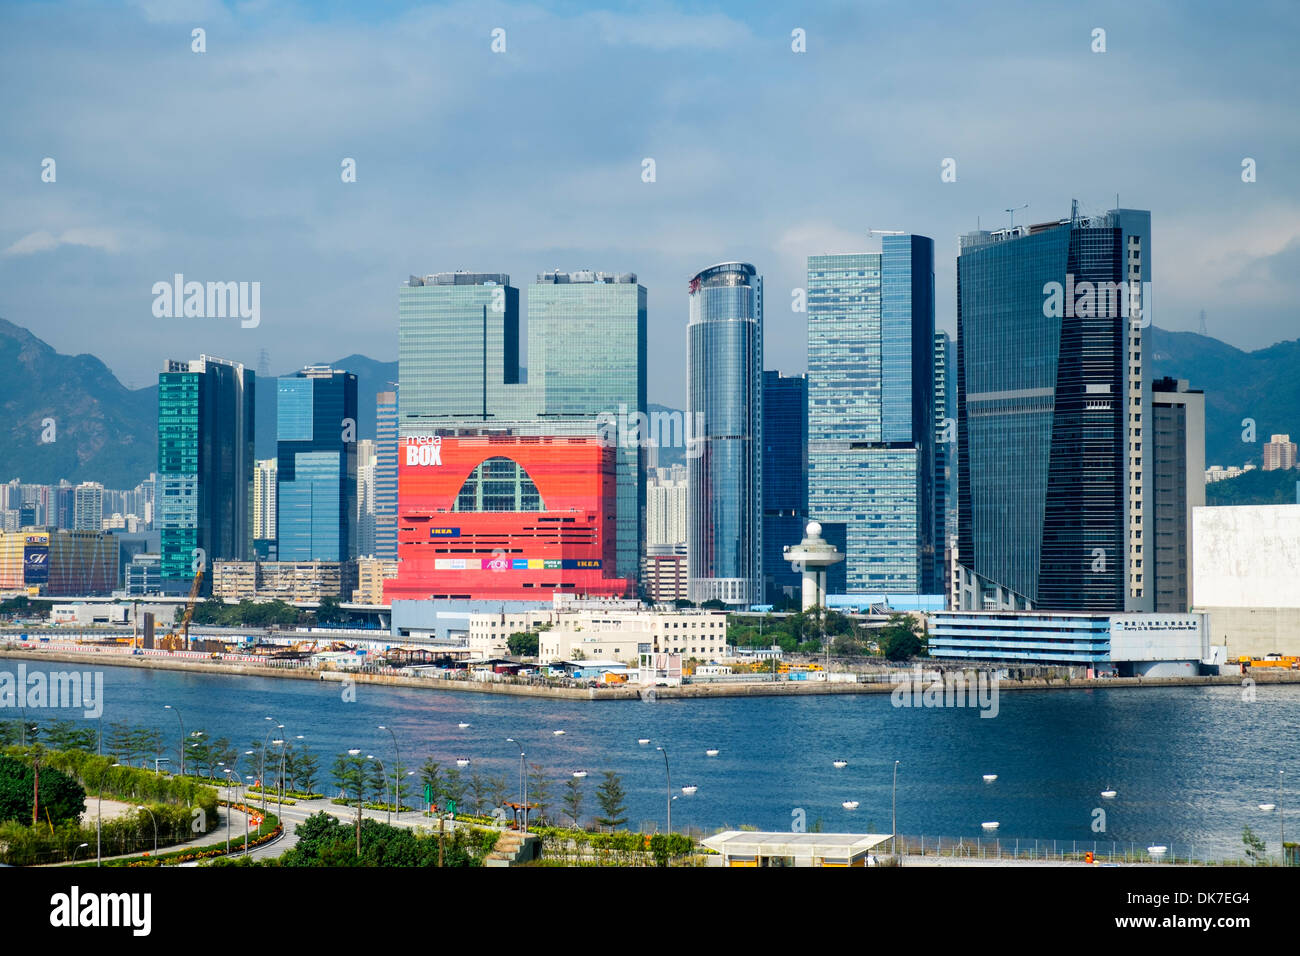 Vue de paysage urbain urbaines denses et hautes tours à Kowloon Bay Hong Kong Banque D'Images